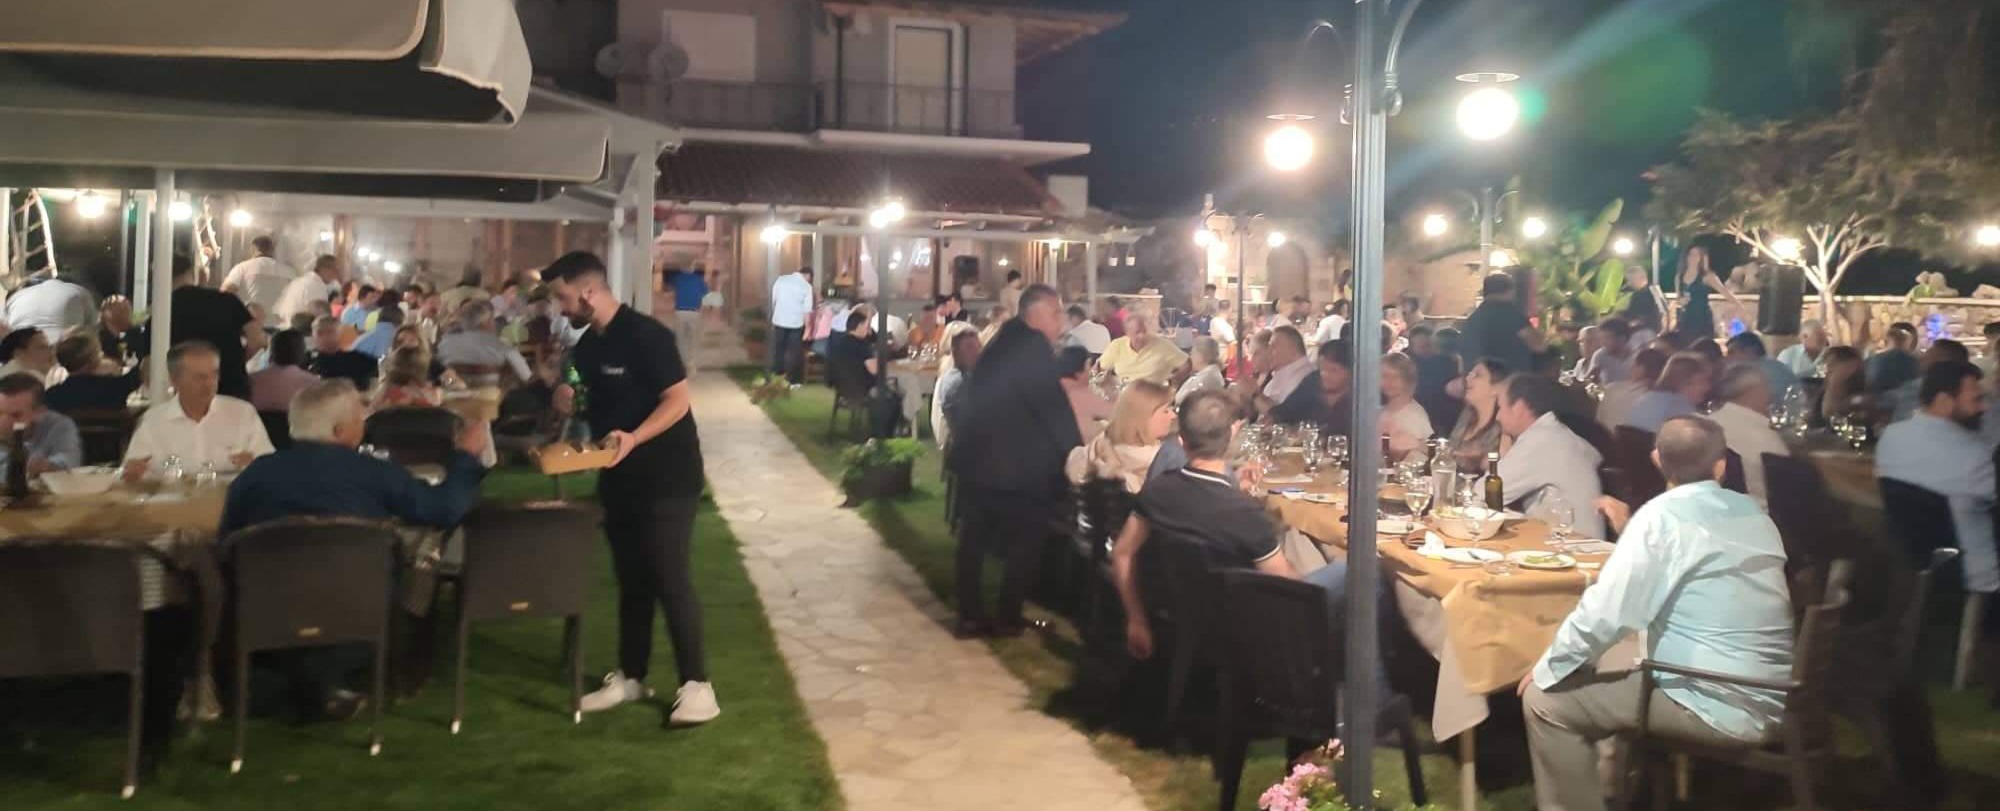 Συμβαίνει τώρα: Δείπνο ο Δήμος Καλαμάτας στα τοπικά του συμβούλια, στο Αρφαρά